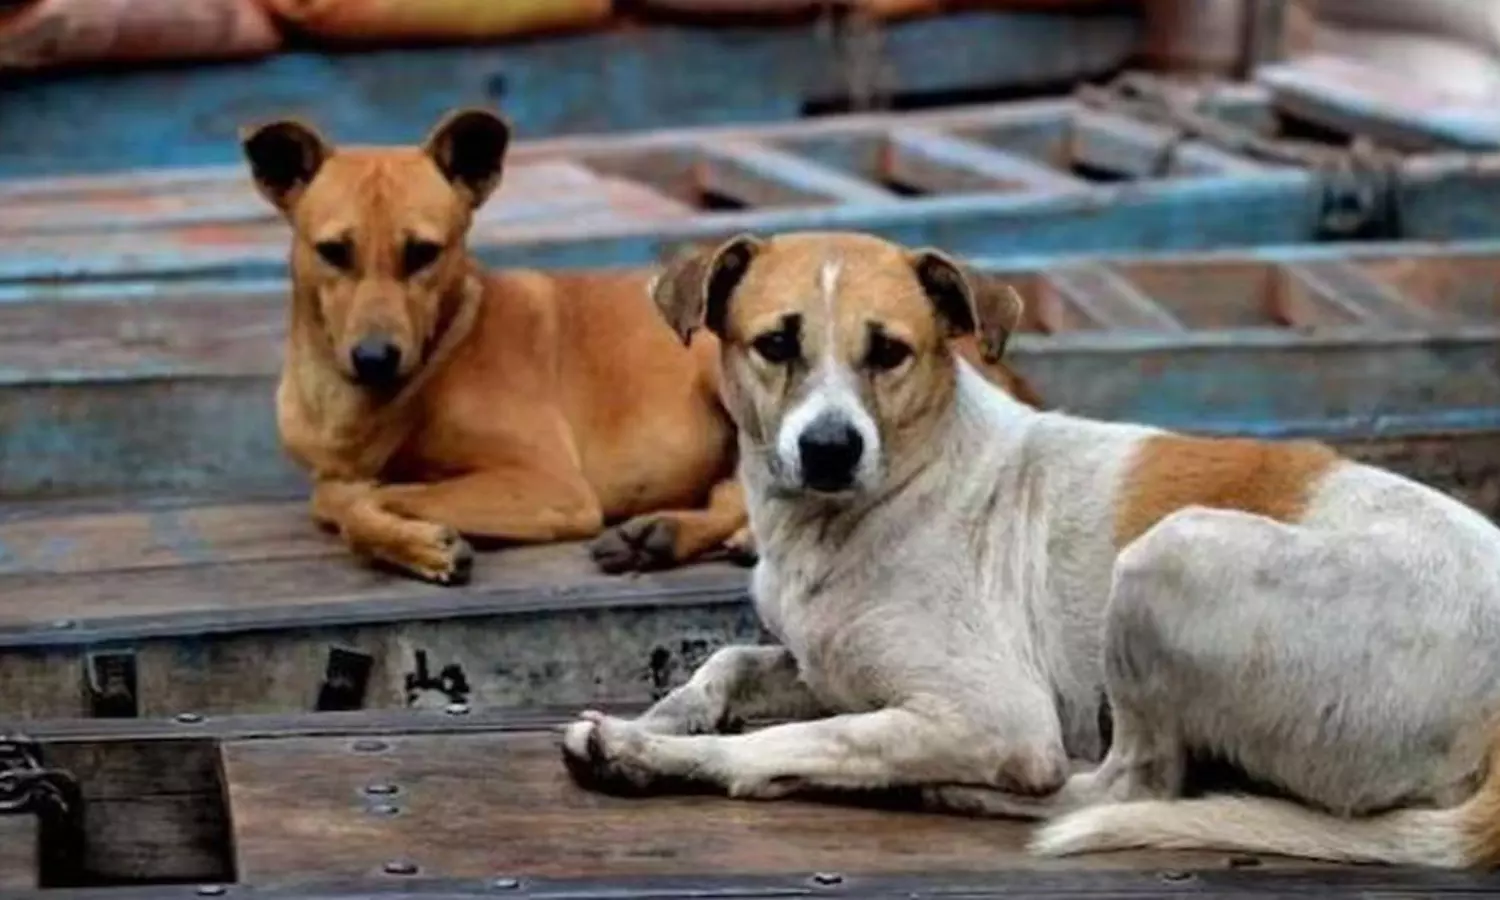 झाबुआ: कुत्तों संग हैवानियत पर PETA इंडिया और मेनका गांधी की शिकायत के बाद झाबुआ पुलिस की बड़ी कार्रवाई...